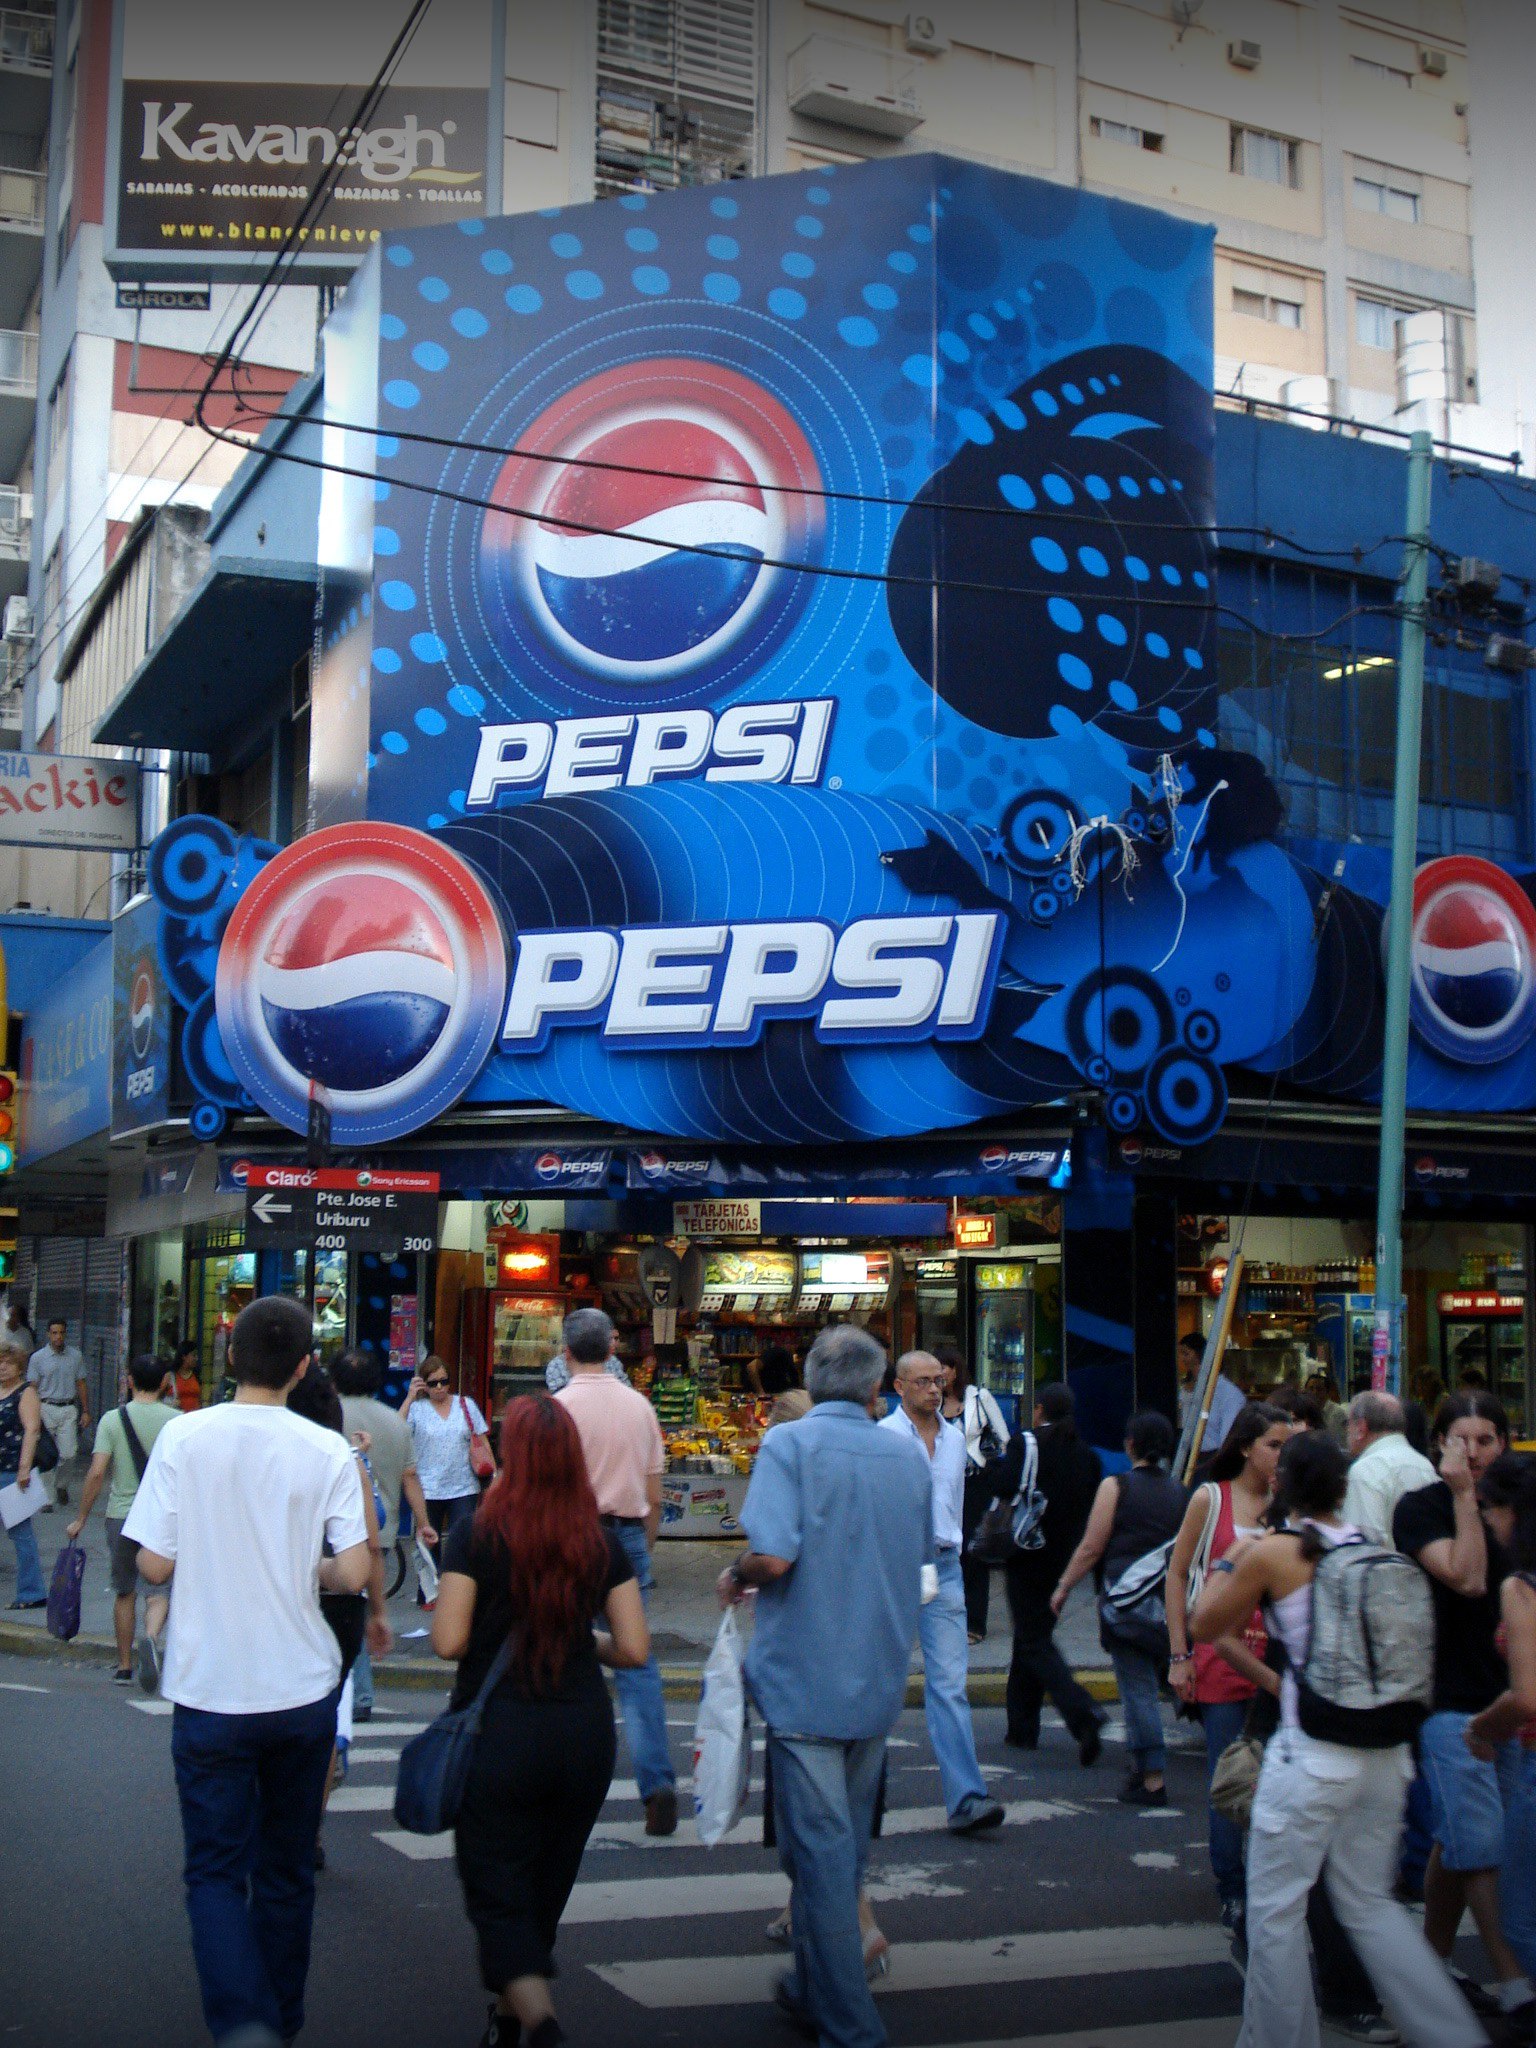 Pepsi POS Open 25 Drusgstore Kiosko Choreography Marquee Environmental Customized